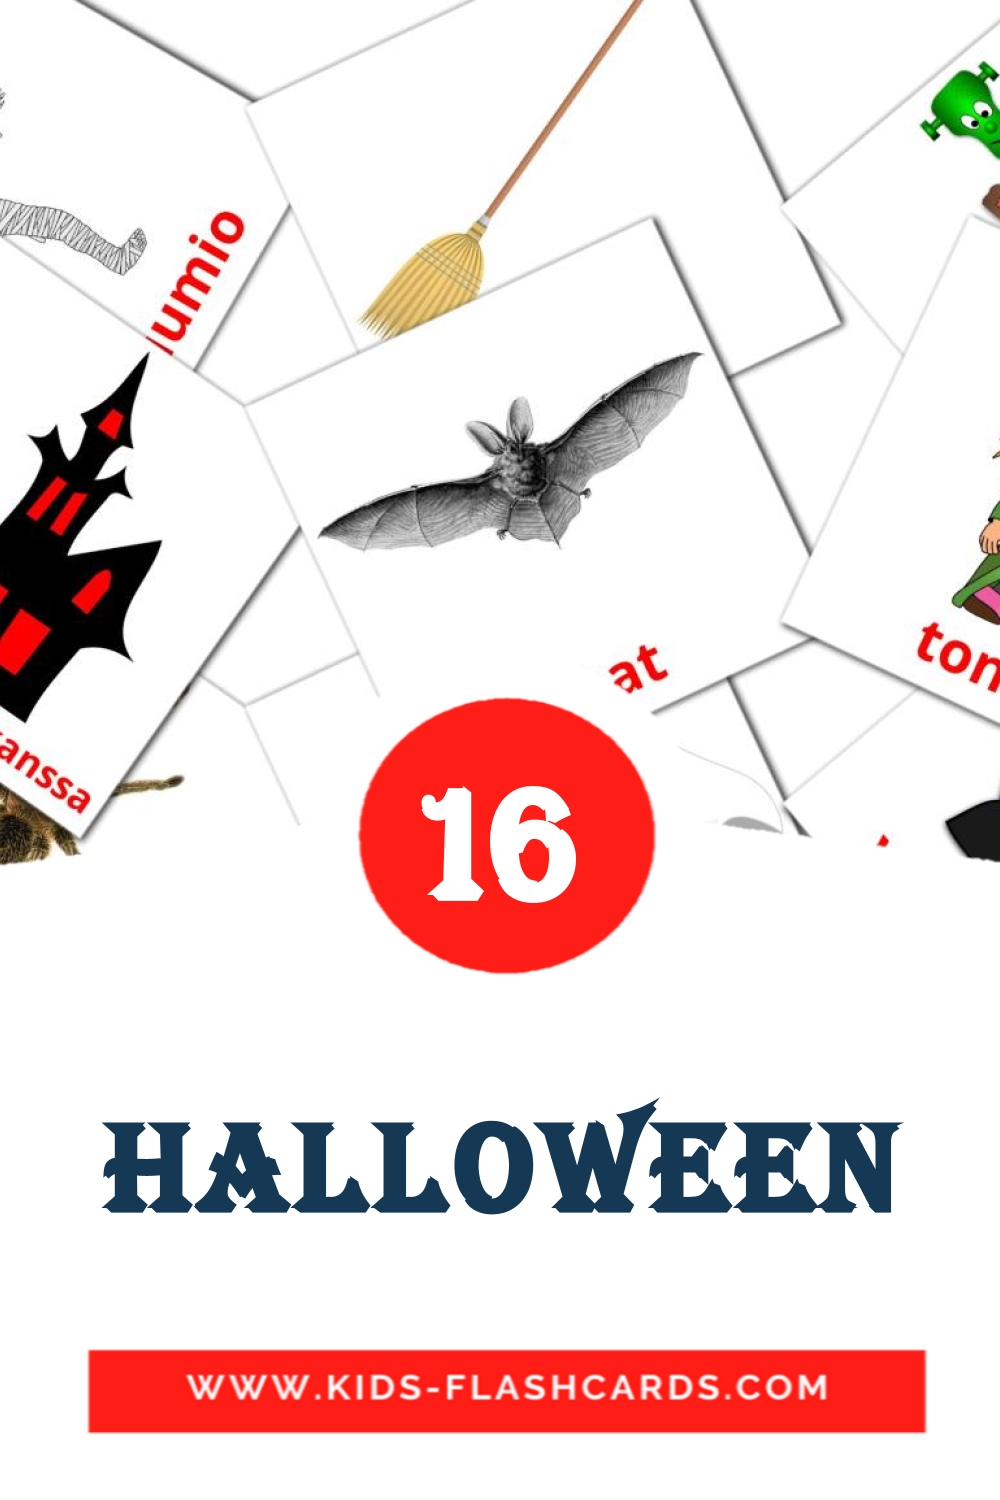 16 Halloween fotokaarten voor kleuters in het finse